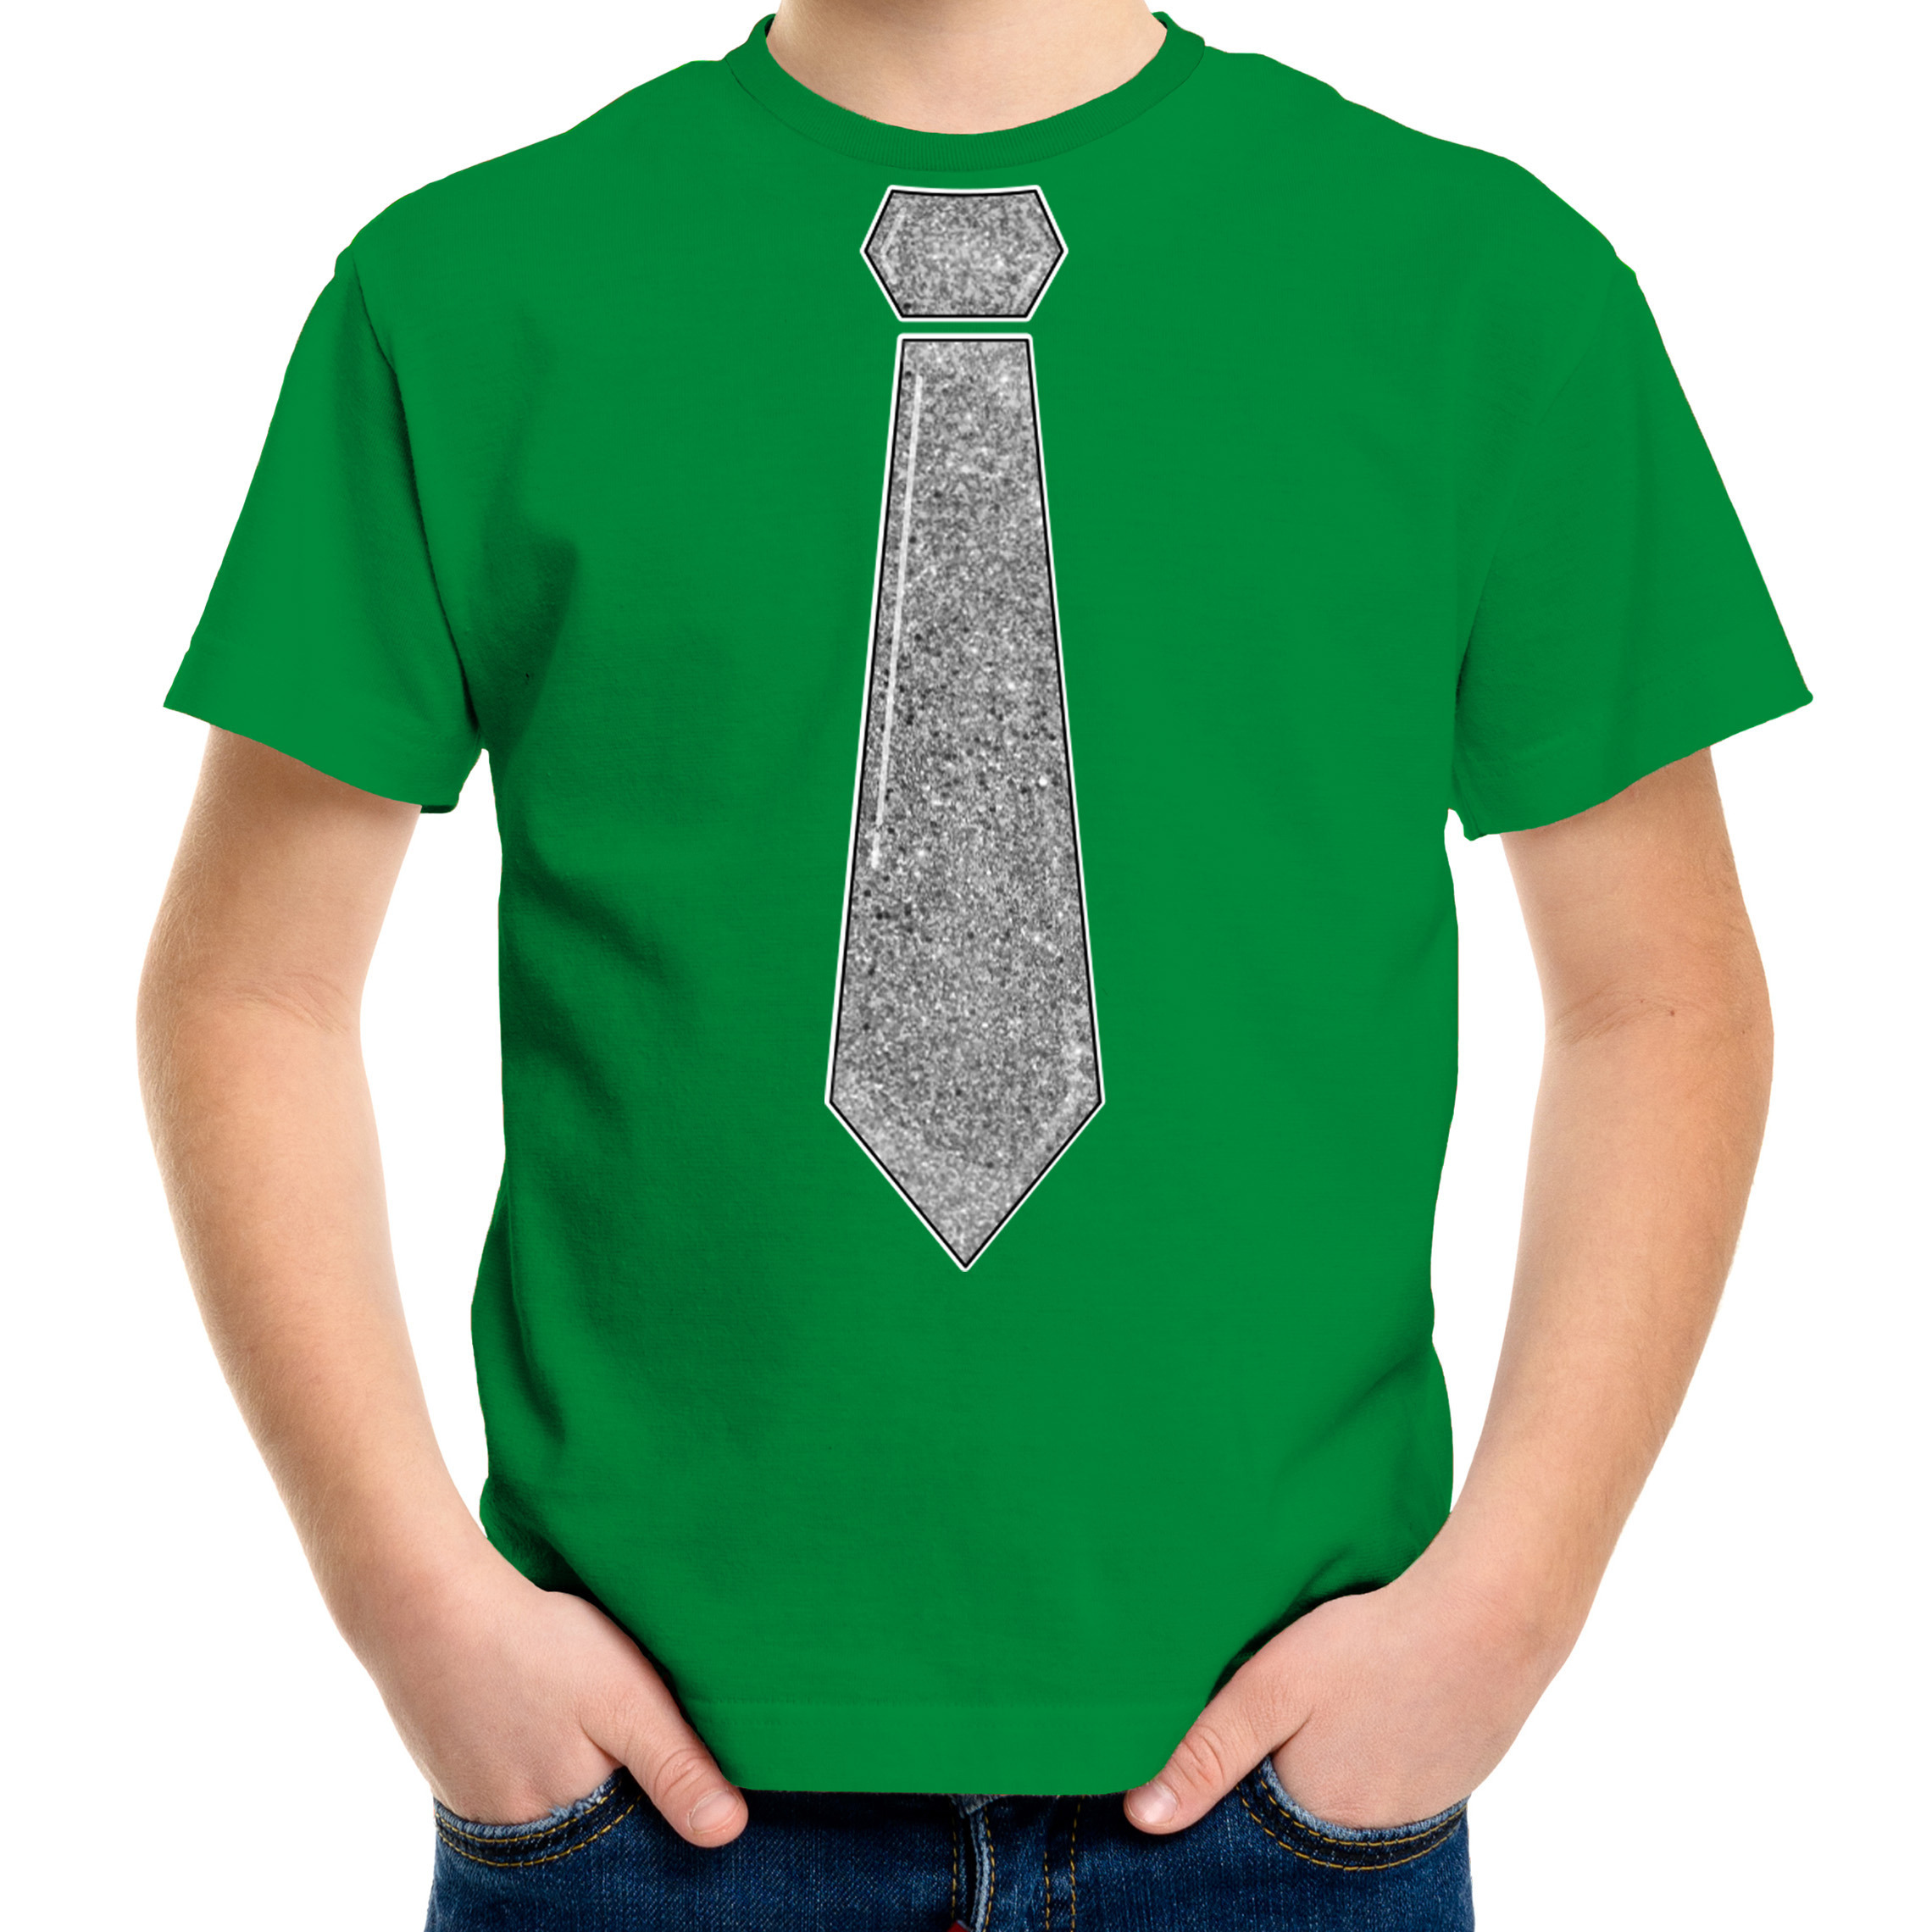 Verkleed t-shirt voor kinderen glitter stropdas groen jongen carnaval-themafeest kostuum